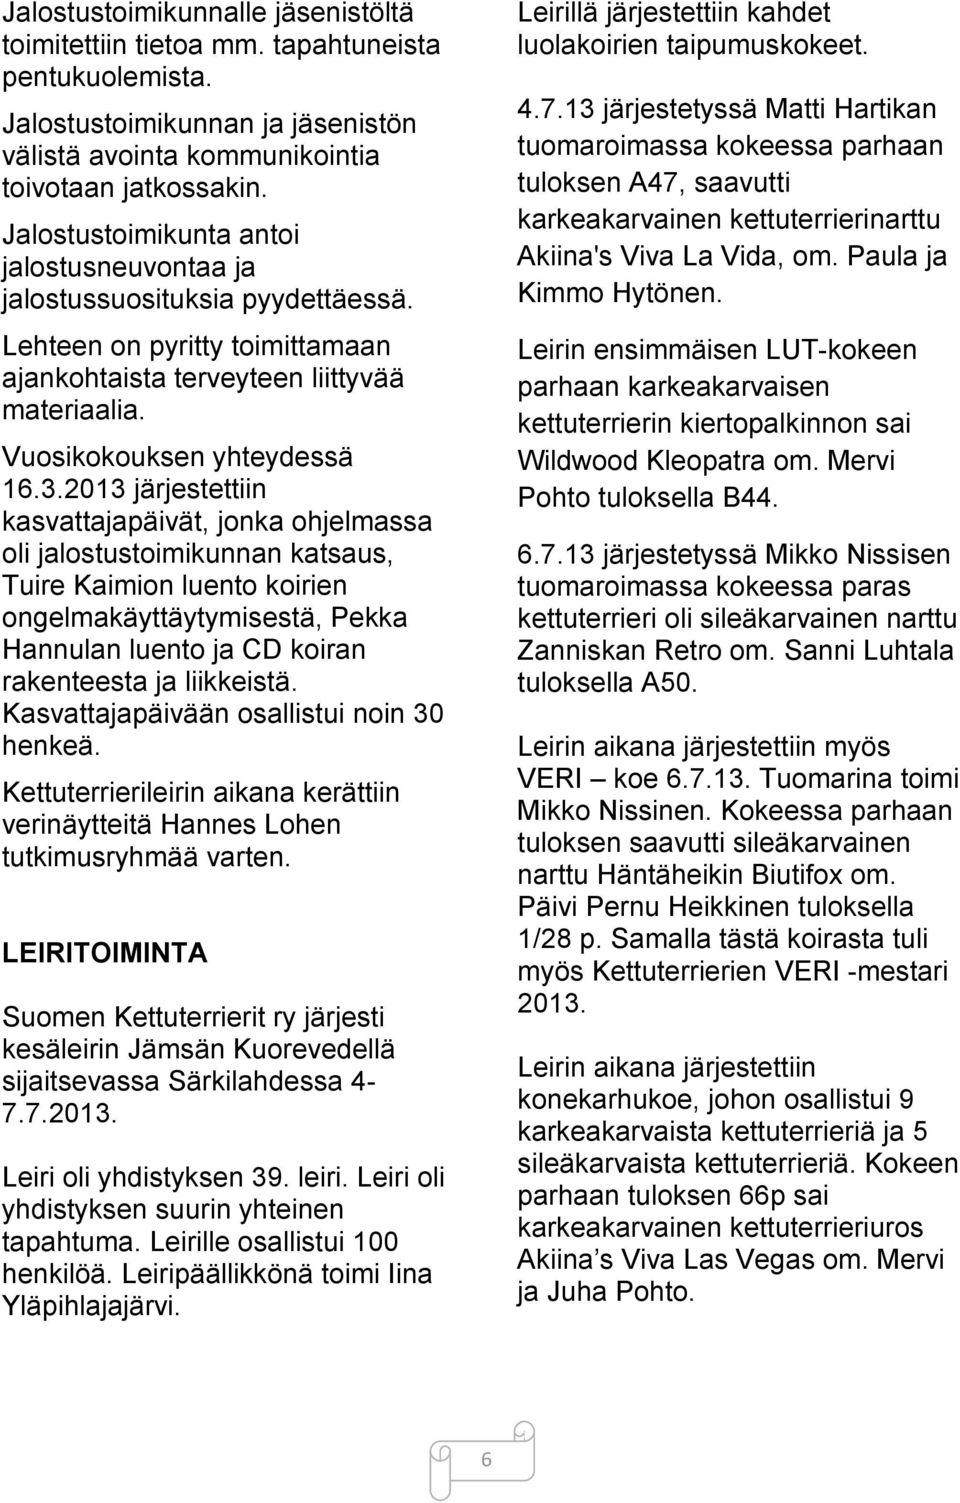 2013 järjestettiin kasvattajapäivät, jonka ohjelmassa oli jalostustoimikunnan katsaus, Tuire Kaimion luento koirien ongelmakäyttäytymisestä, Pekka Hannulan luento ja CD koiran rakenteesta ja